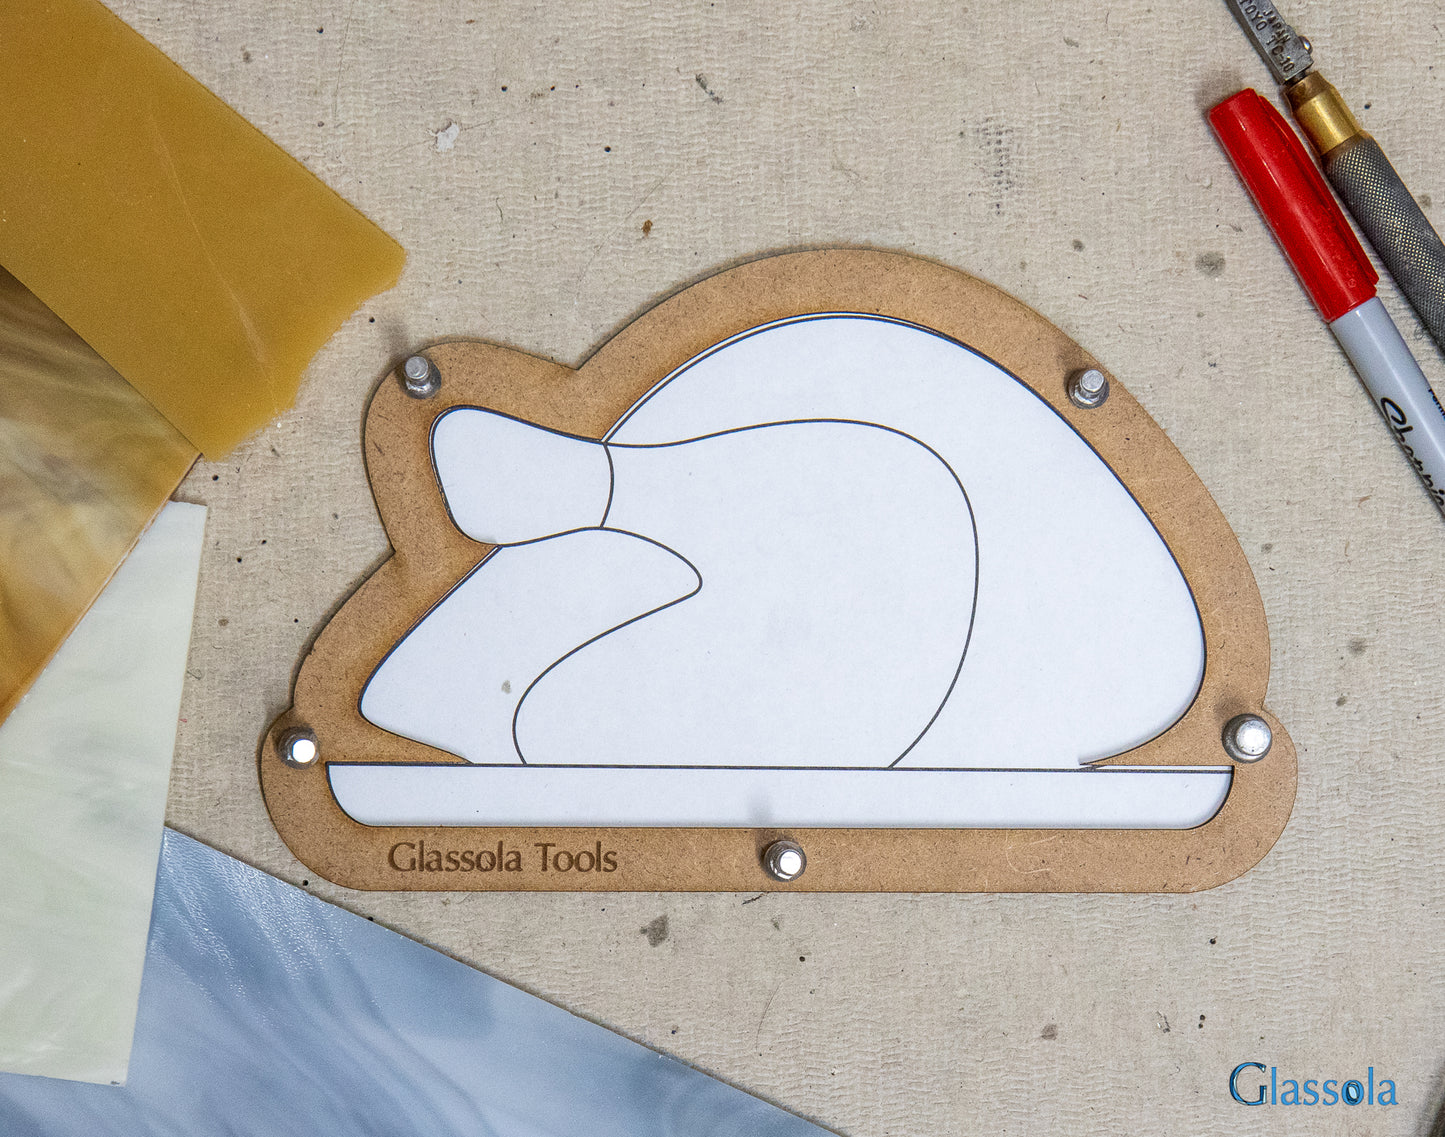 Glassola Tools Roasted Turkey Layout Frame